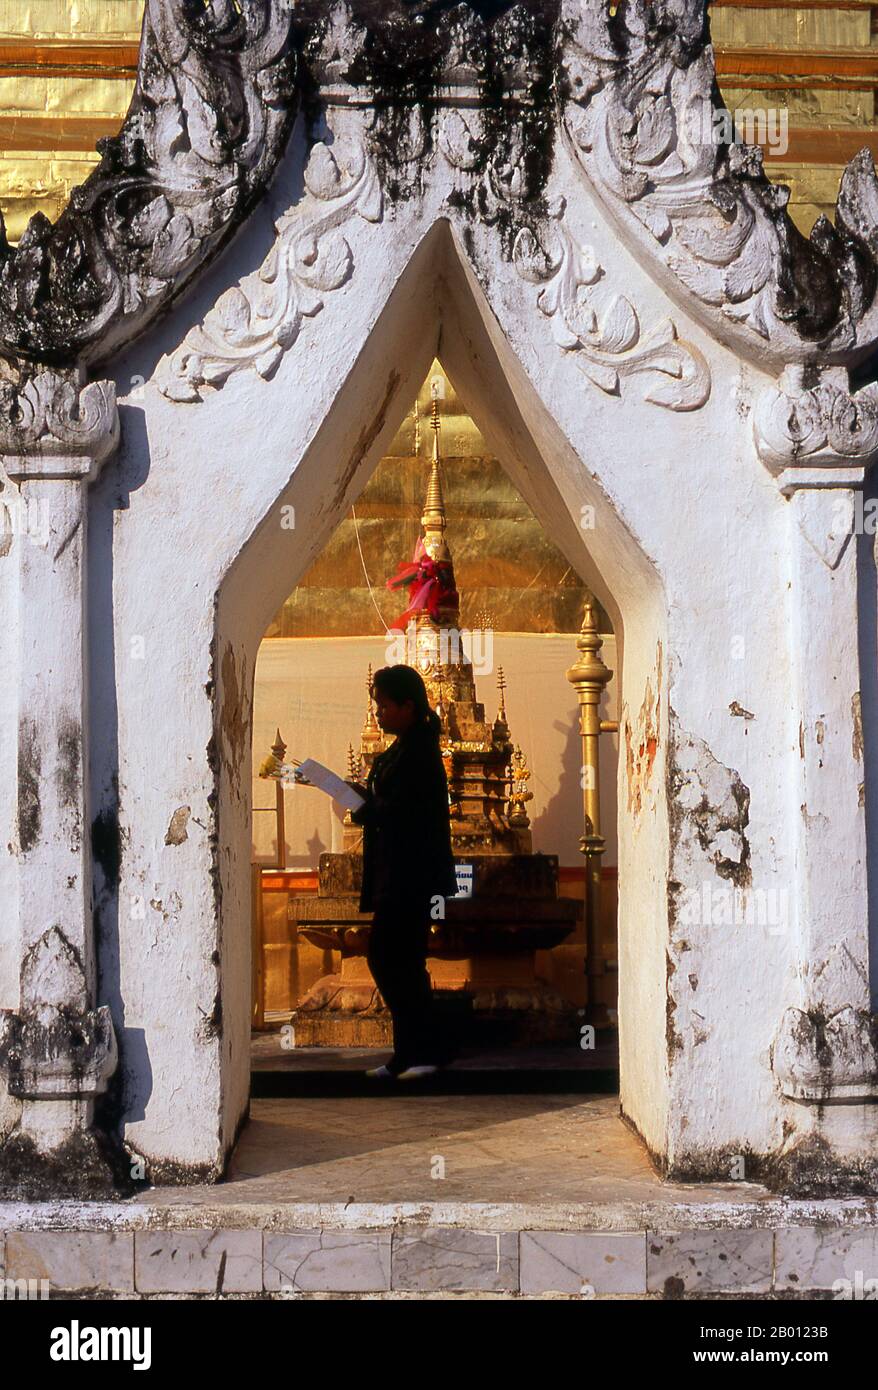 Tailandia: Un devoto budista rodea el chedi principal en Wat Phra That Chae Haeng, Nan, Norte de Tailandia. Wat Phra que Chae Haeng data de 1355 y fue construido durante el reinado de Ore Kan Muang. Nan data de mediados del siglo 14th y durante gran parte de su historia fue un reino aislado. La ciudad actual se extiende a lo largo de la orilla derecha del río Nan. Foto de stock